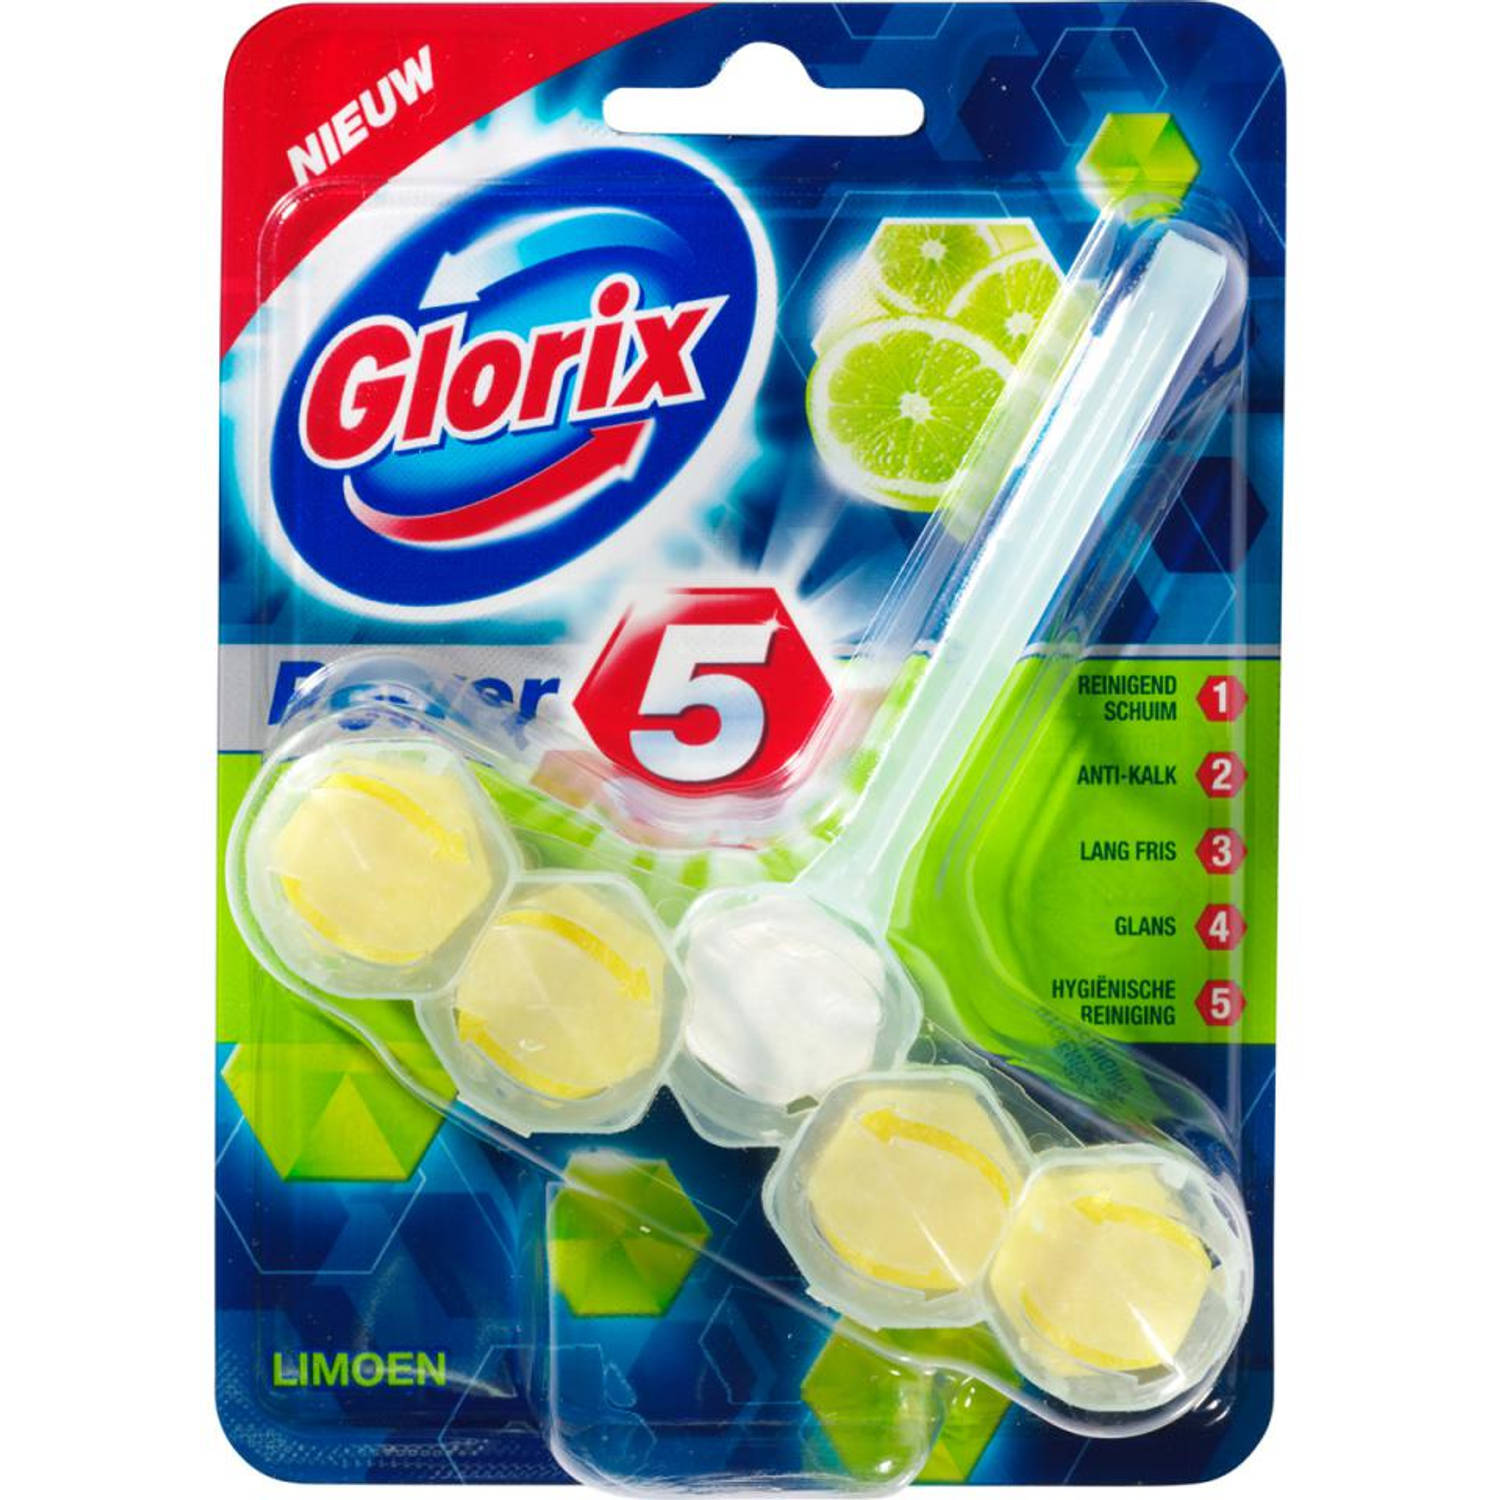 Glorix Glorix Power 5 Citroen wc-blok